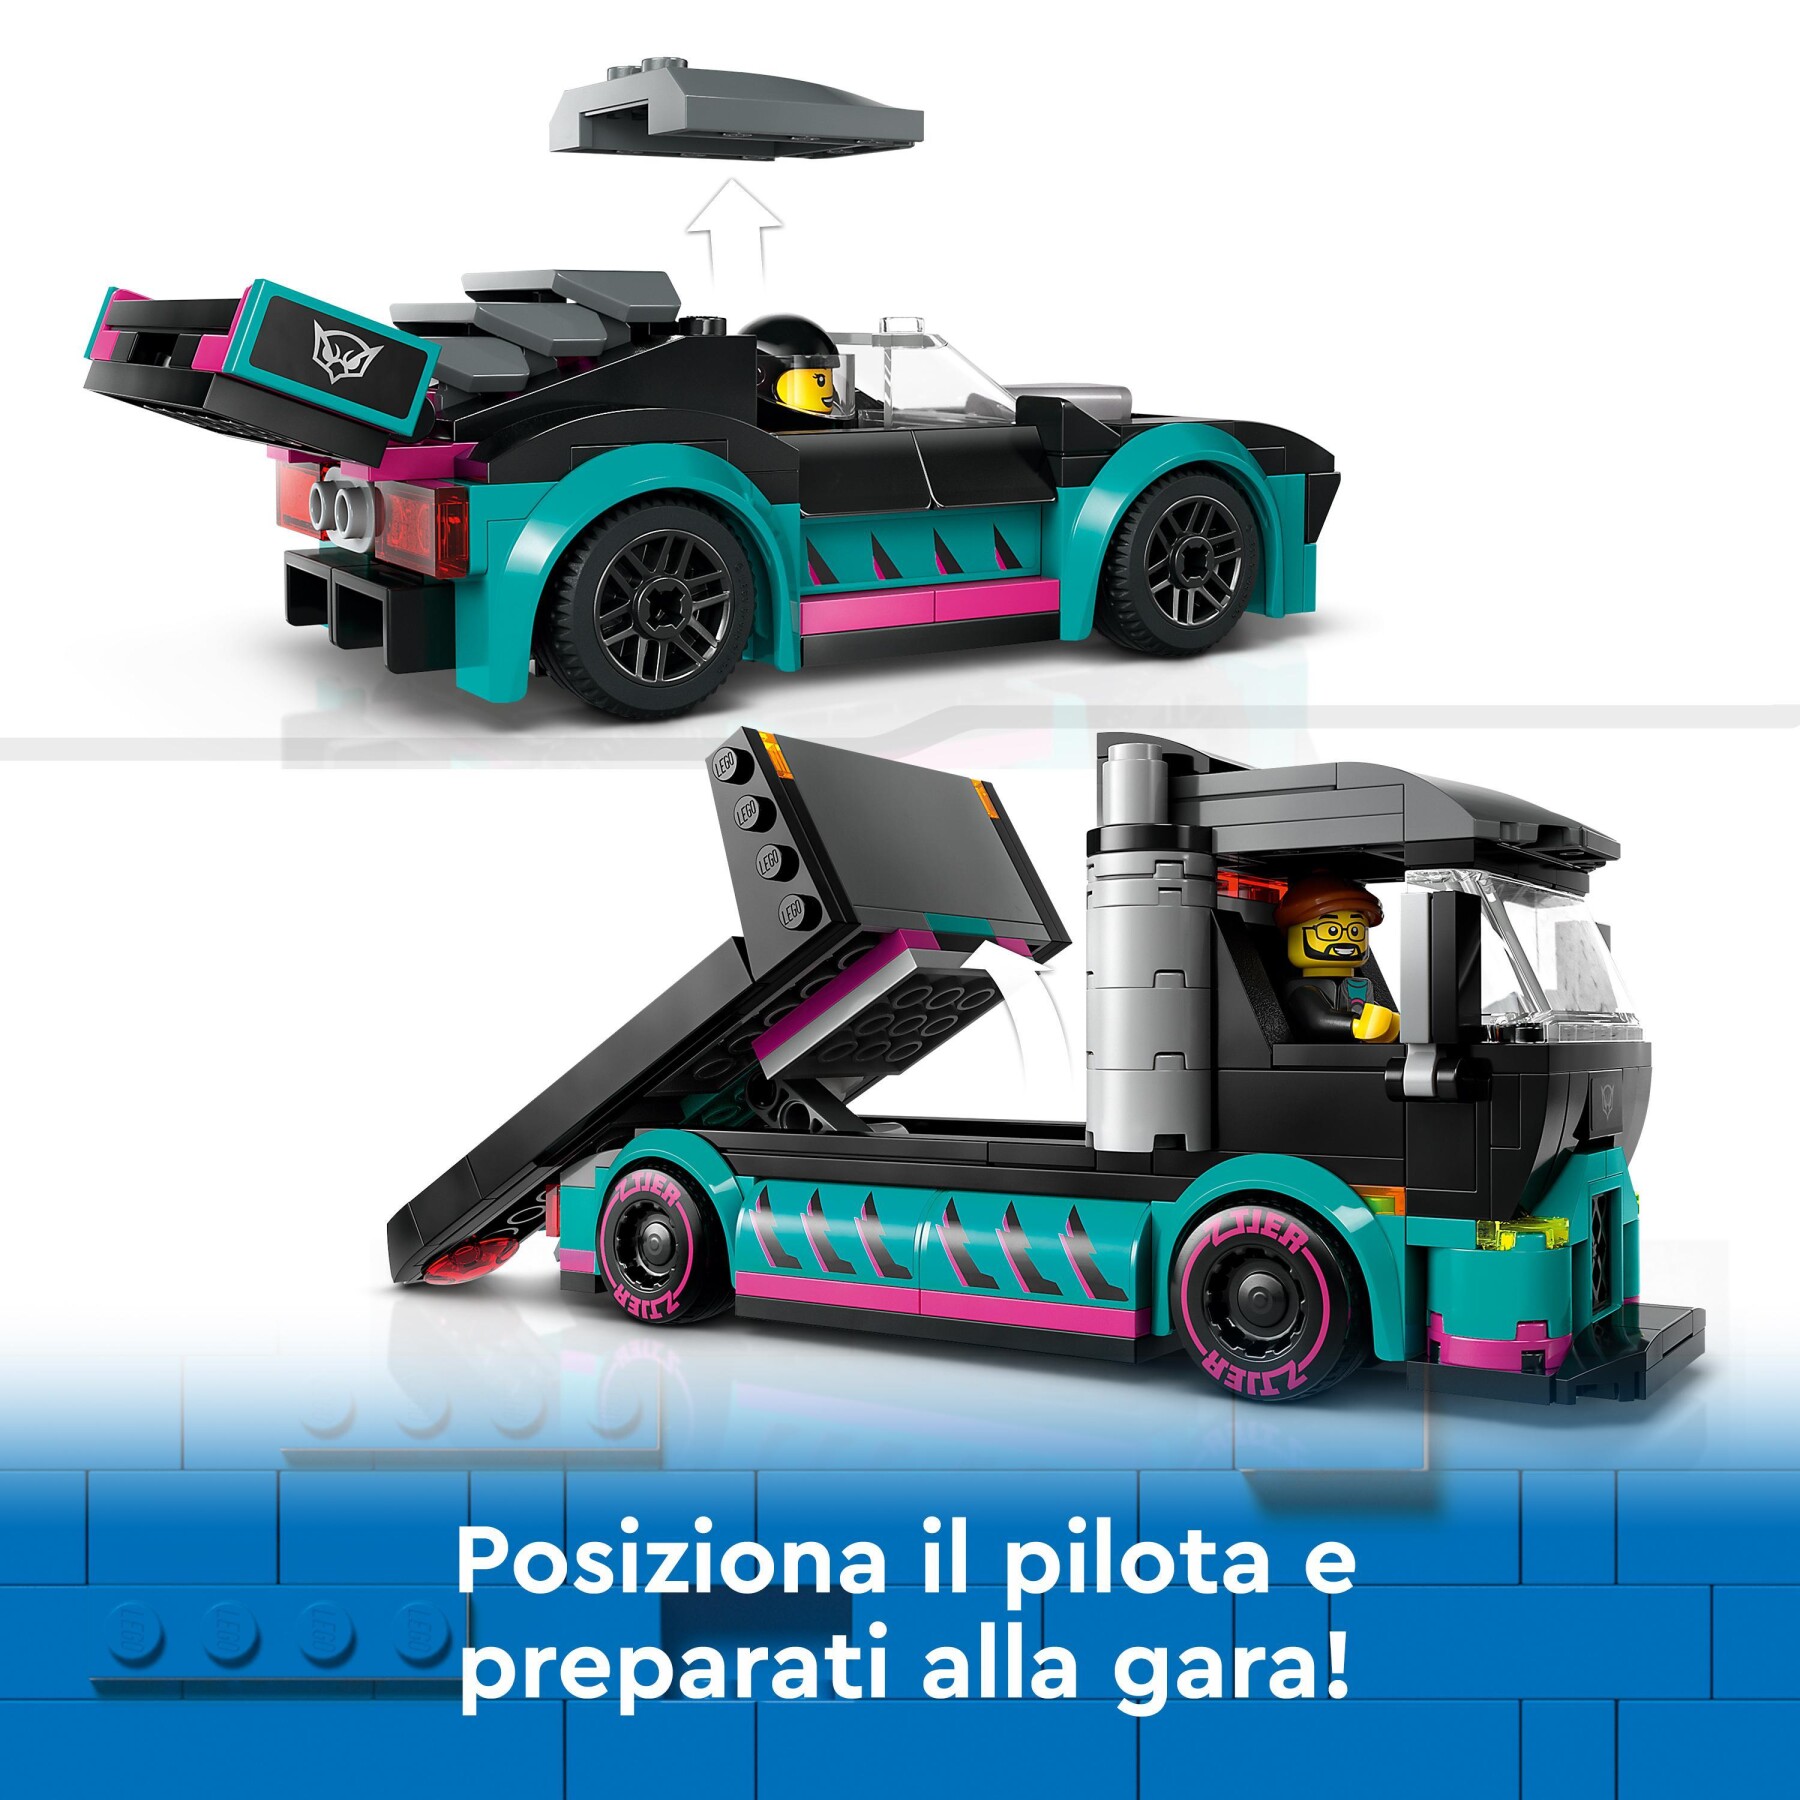 Lego city 60406 auto da corsa e trasportatore, macchina e camion giocattolo per bambini di 6+, veicolo con rampa funzionante - LEGO CITY